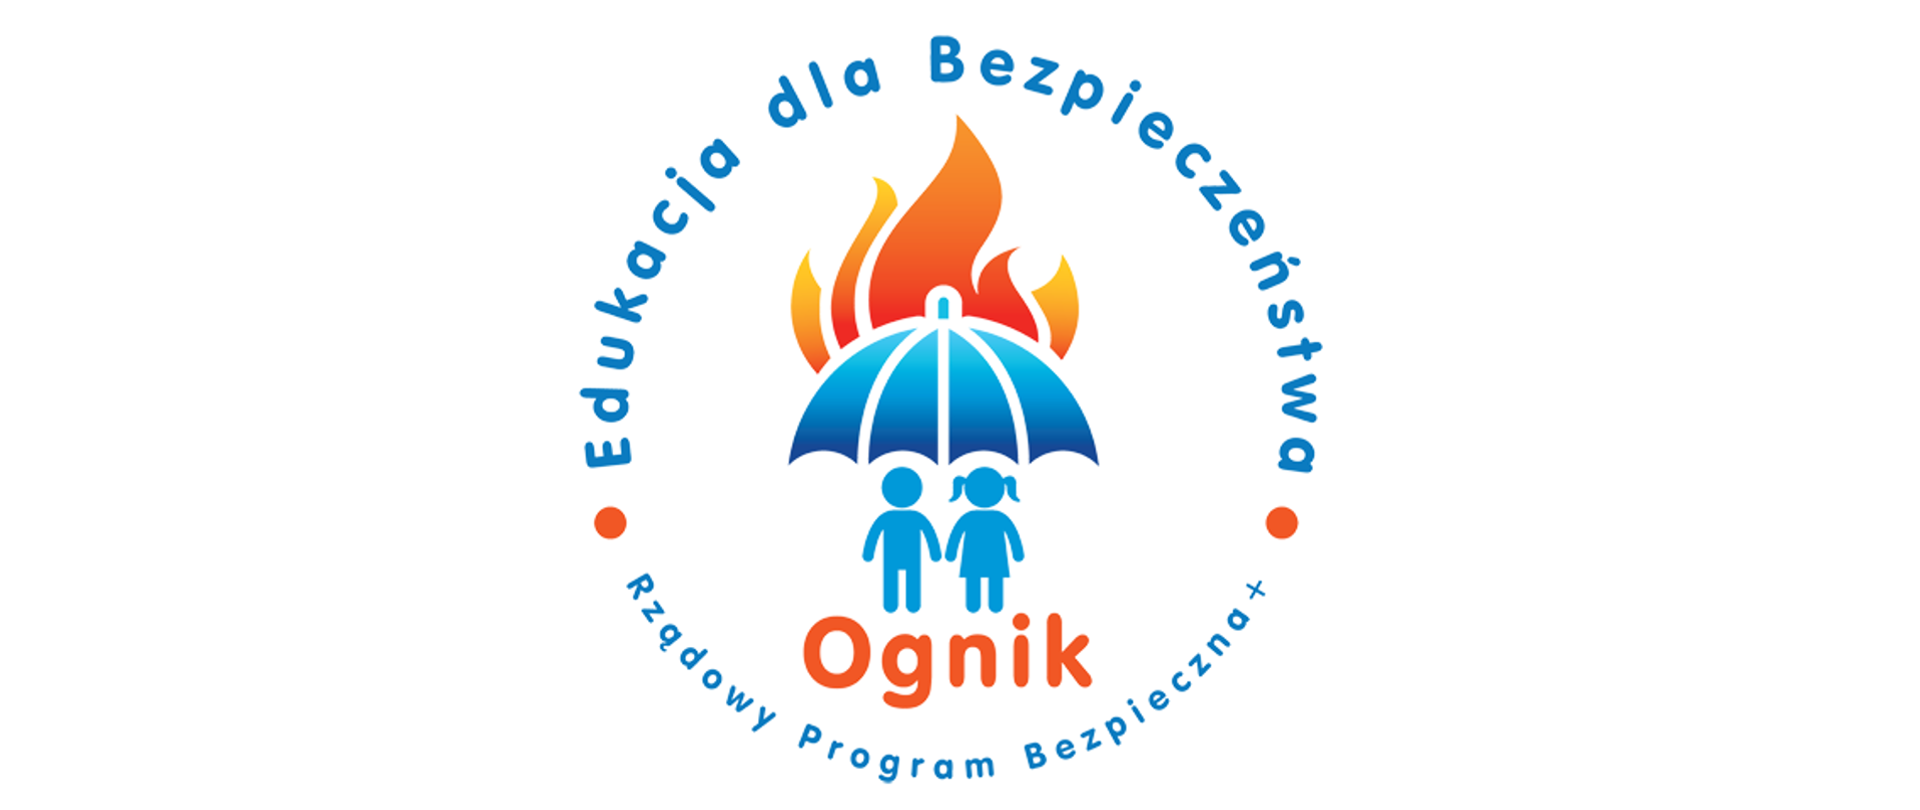 Logo Rządowego Programu Bezpieczna+ Edukacja dla Bezpieczeństwa Ognik